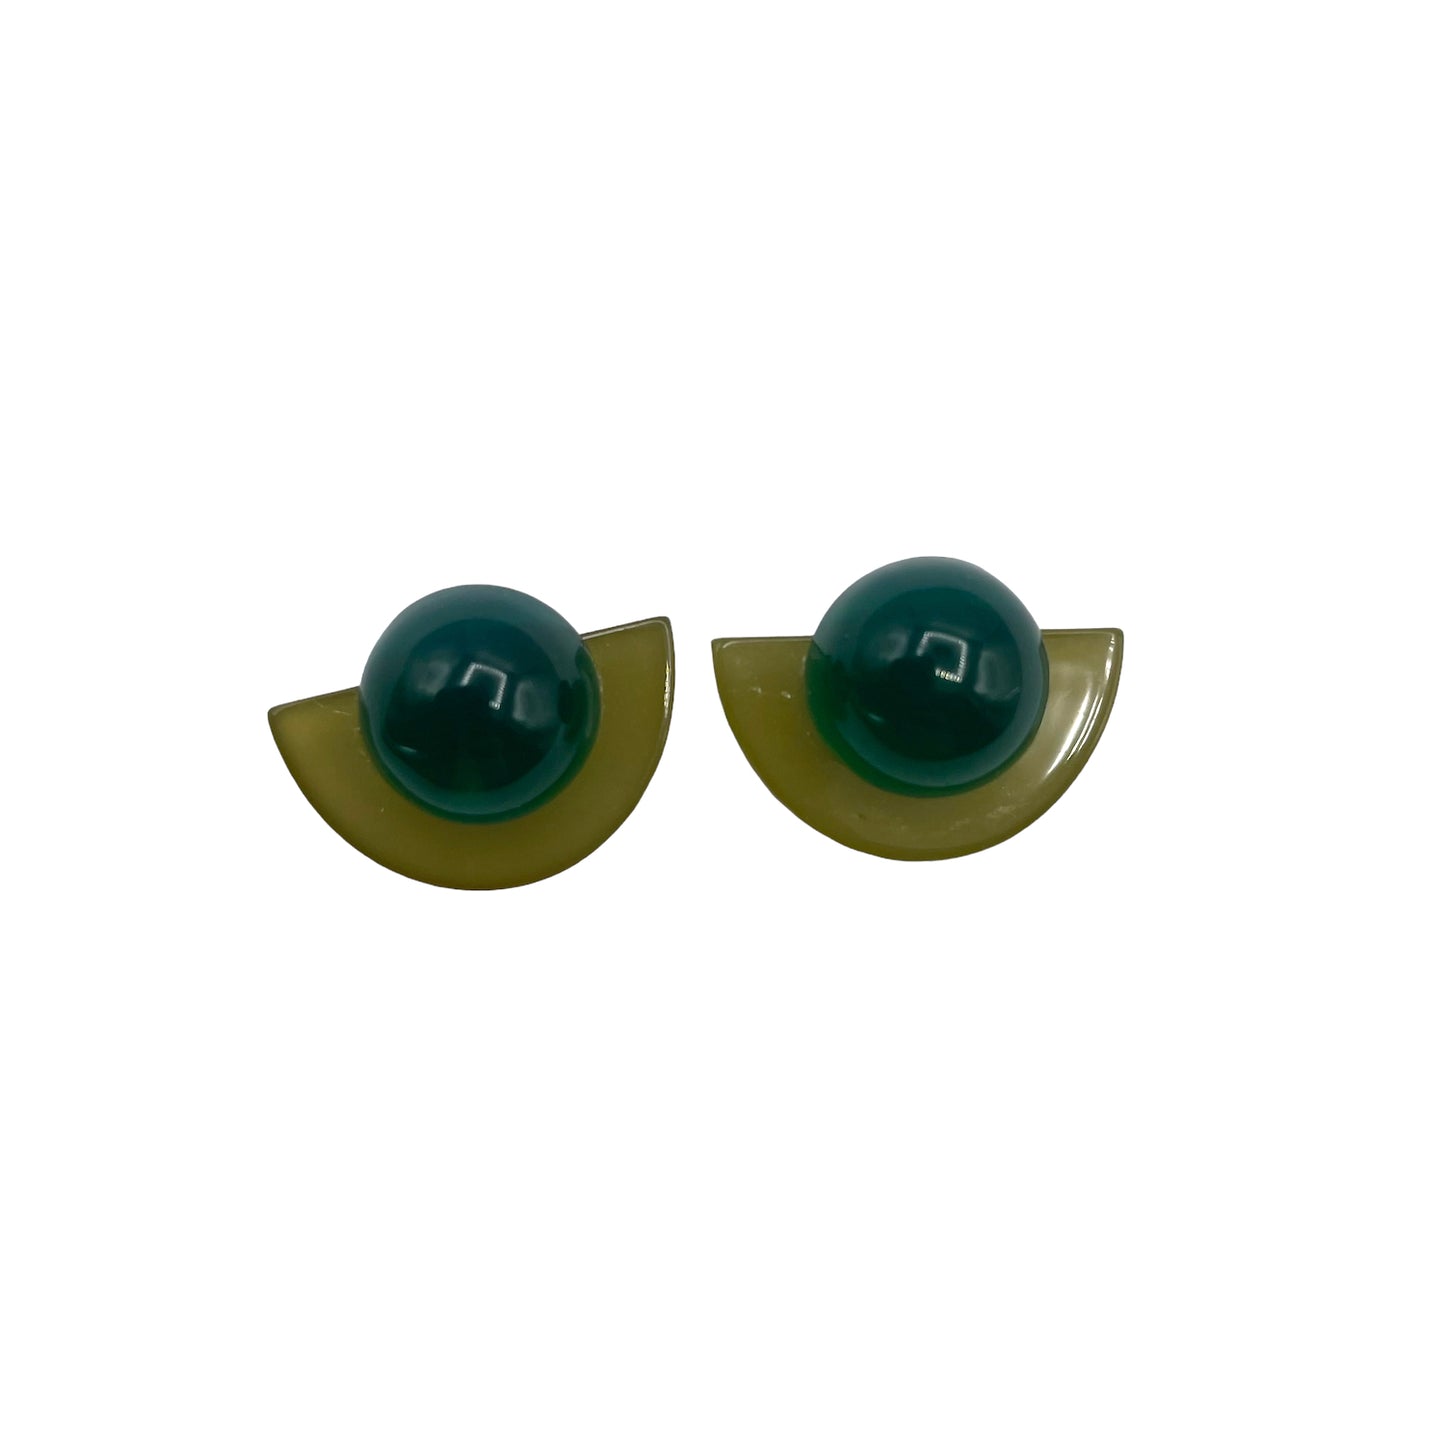 Green semi circle earrings